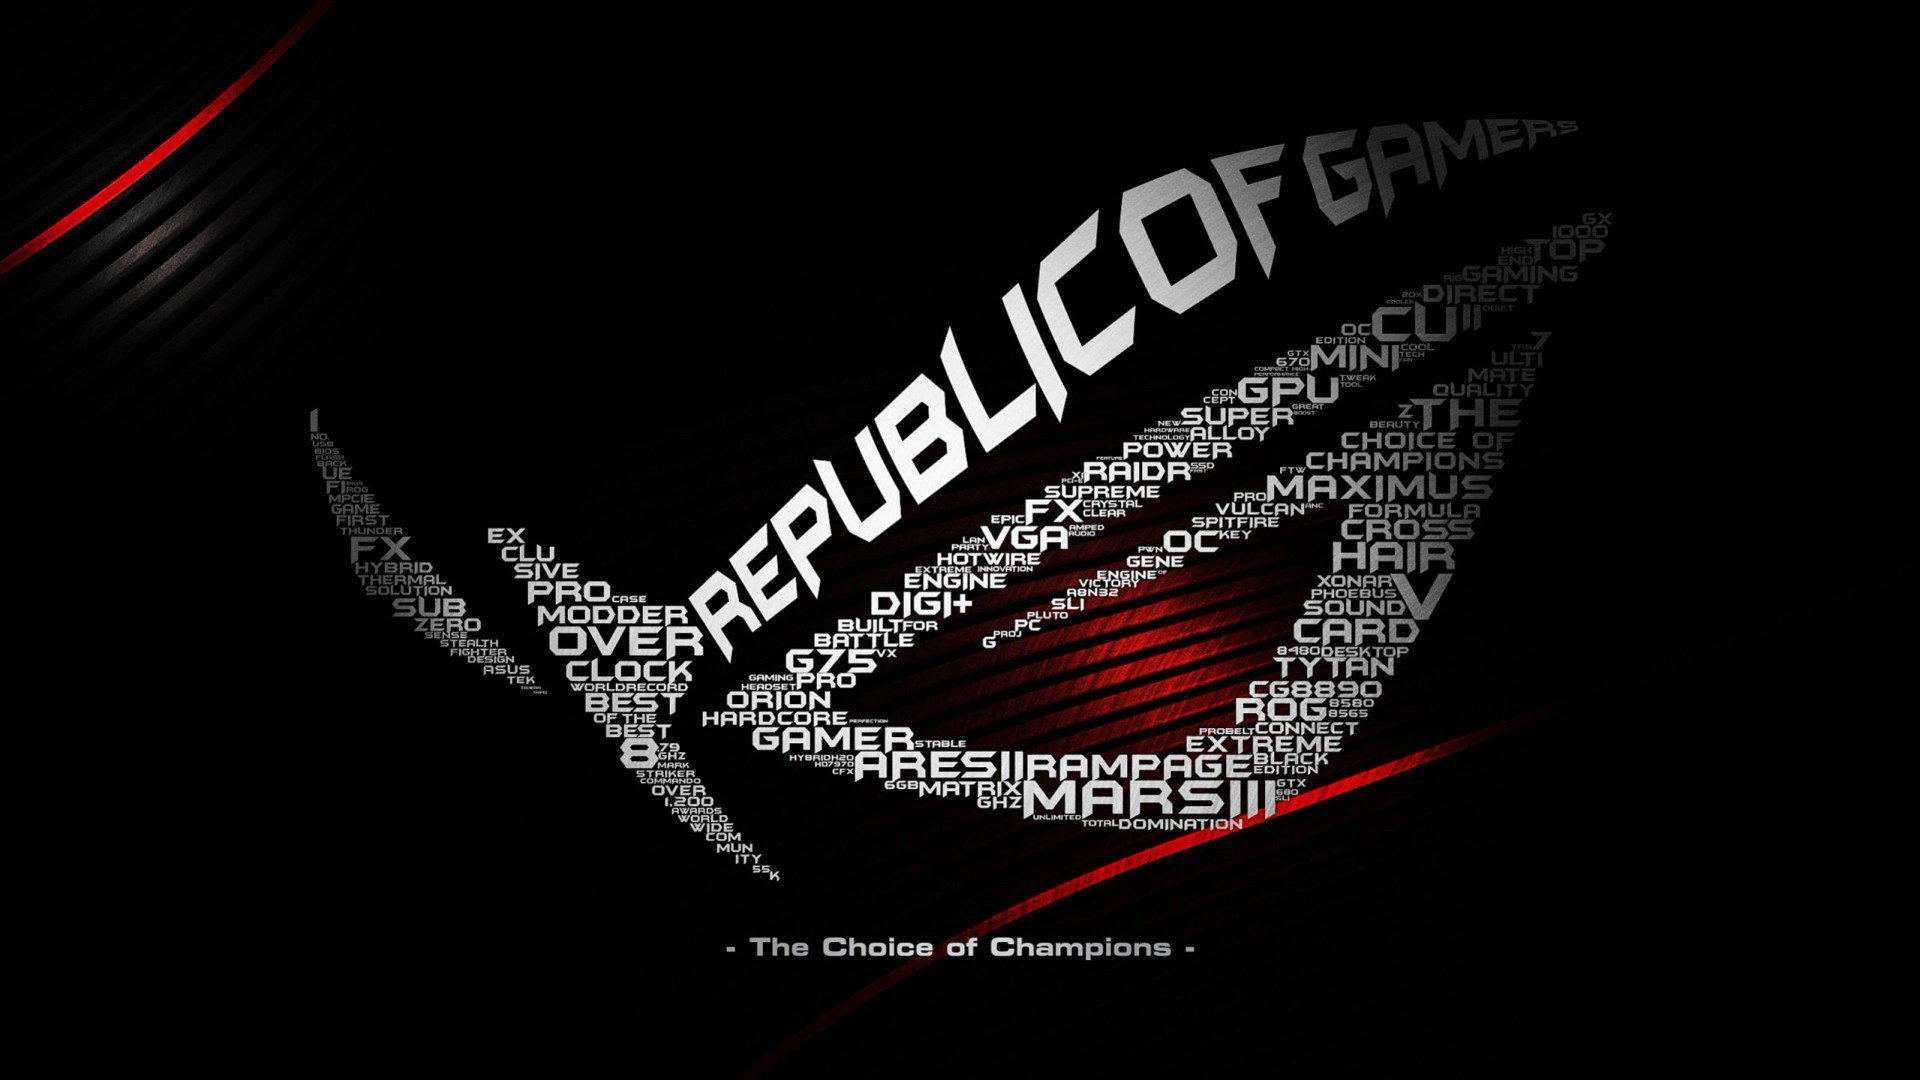 Wallpaper Asus Republic Of Gamers Graffiti Wallpaper 1080p HD Upload